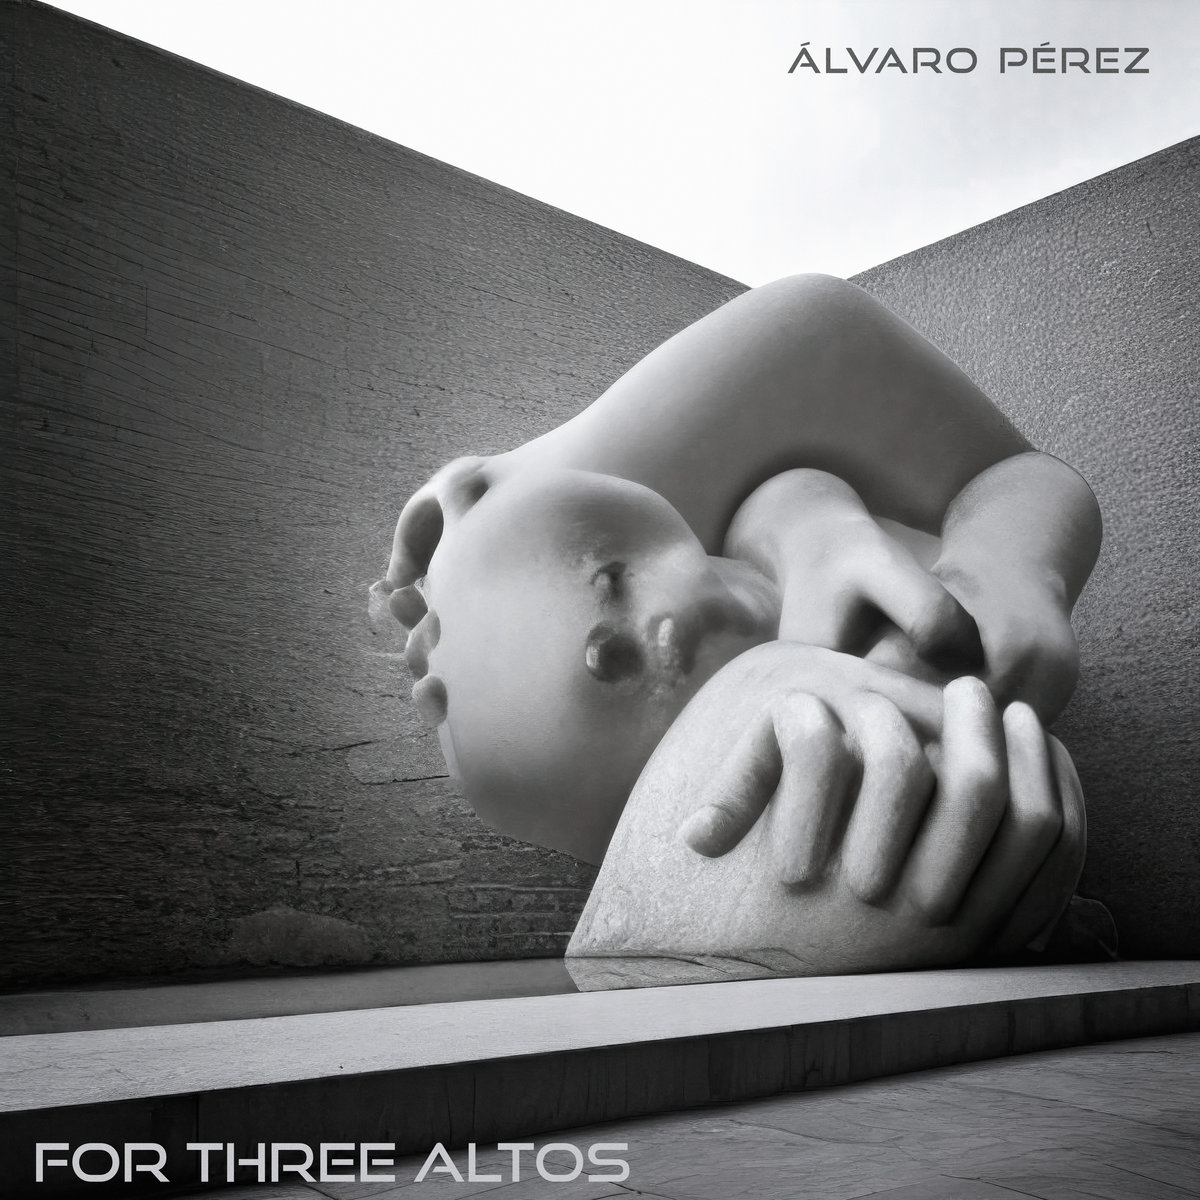  For Three Altos by Álvaro Pérez